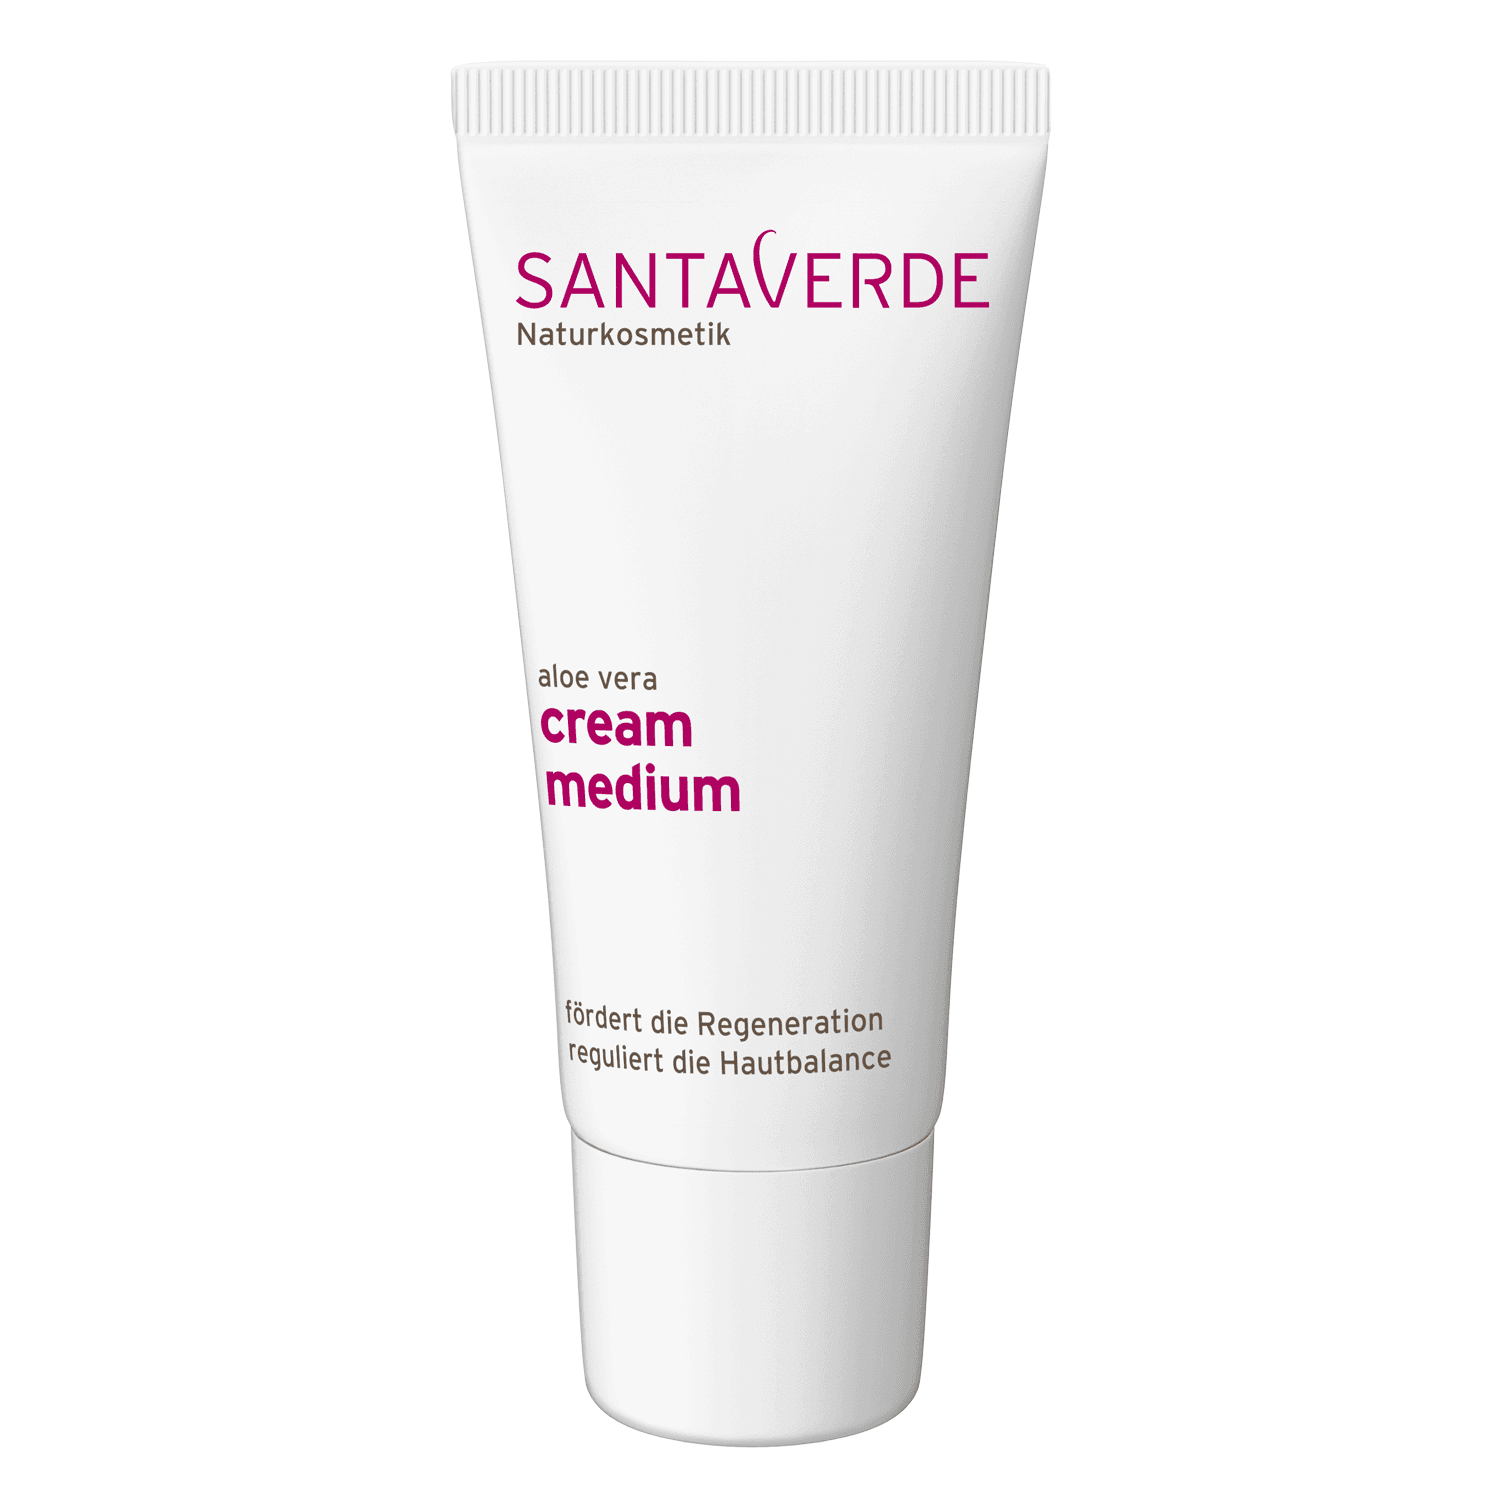 SANTAVERDE - aloe vera cream medium